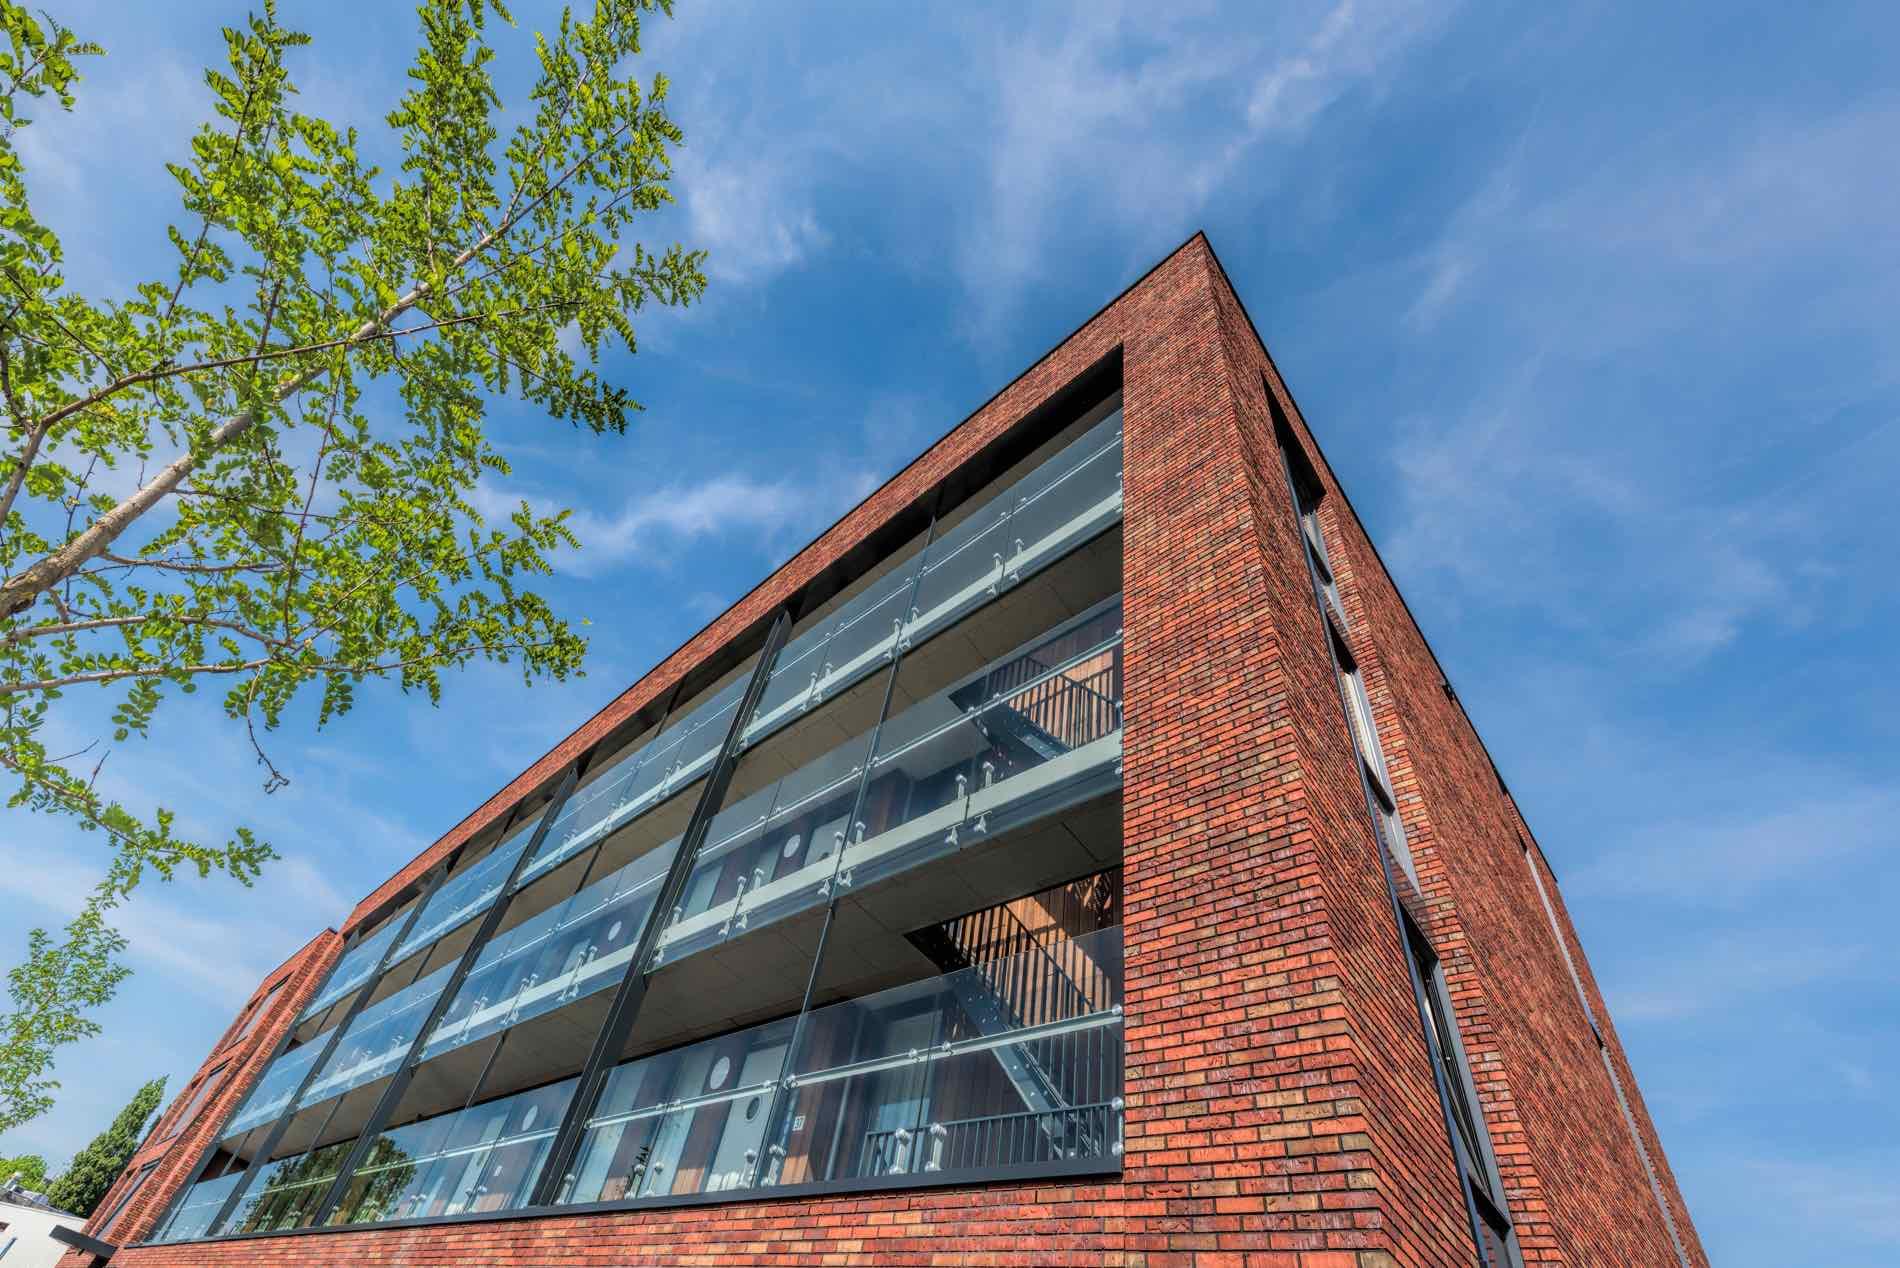 Appartementen Meerendonk 4, Den Bosch - Compen architecten